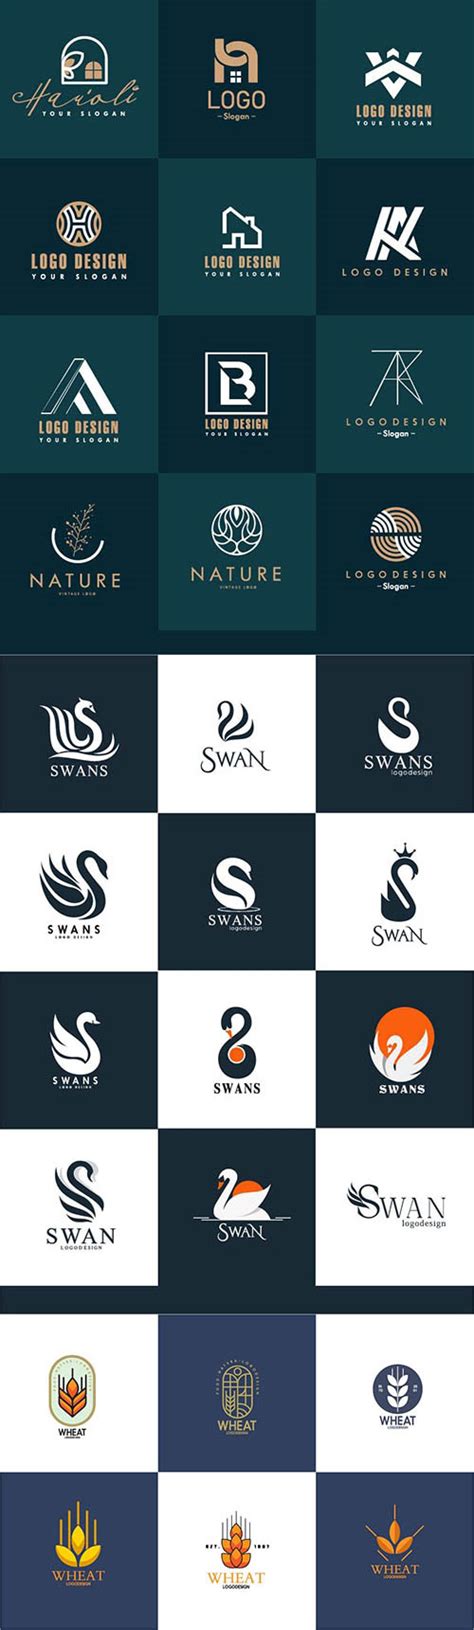 图文并茂分析Logo设计中常用的四种创意方式 - 设计在线